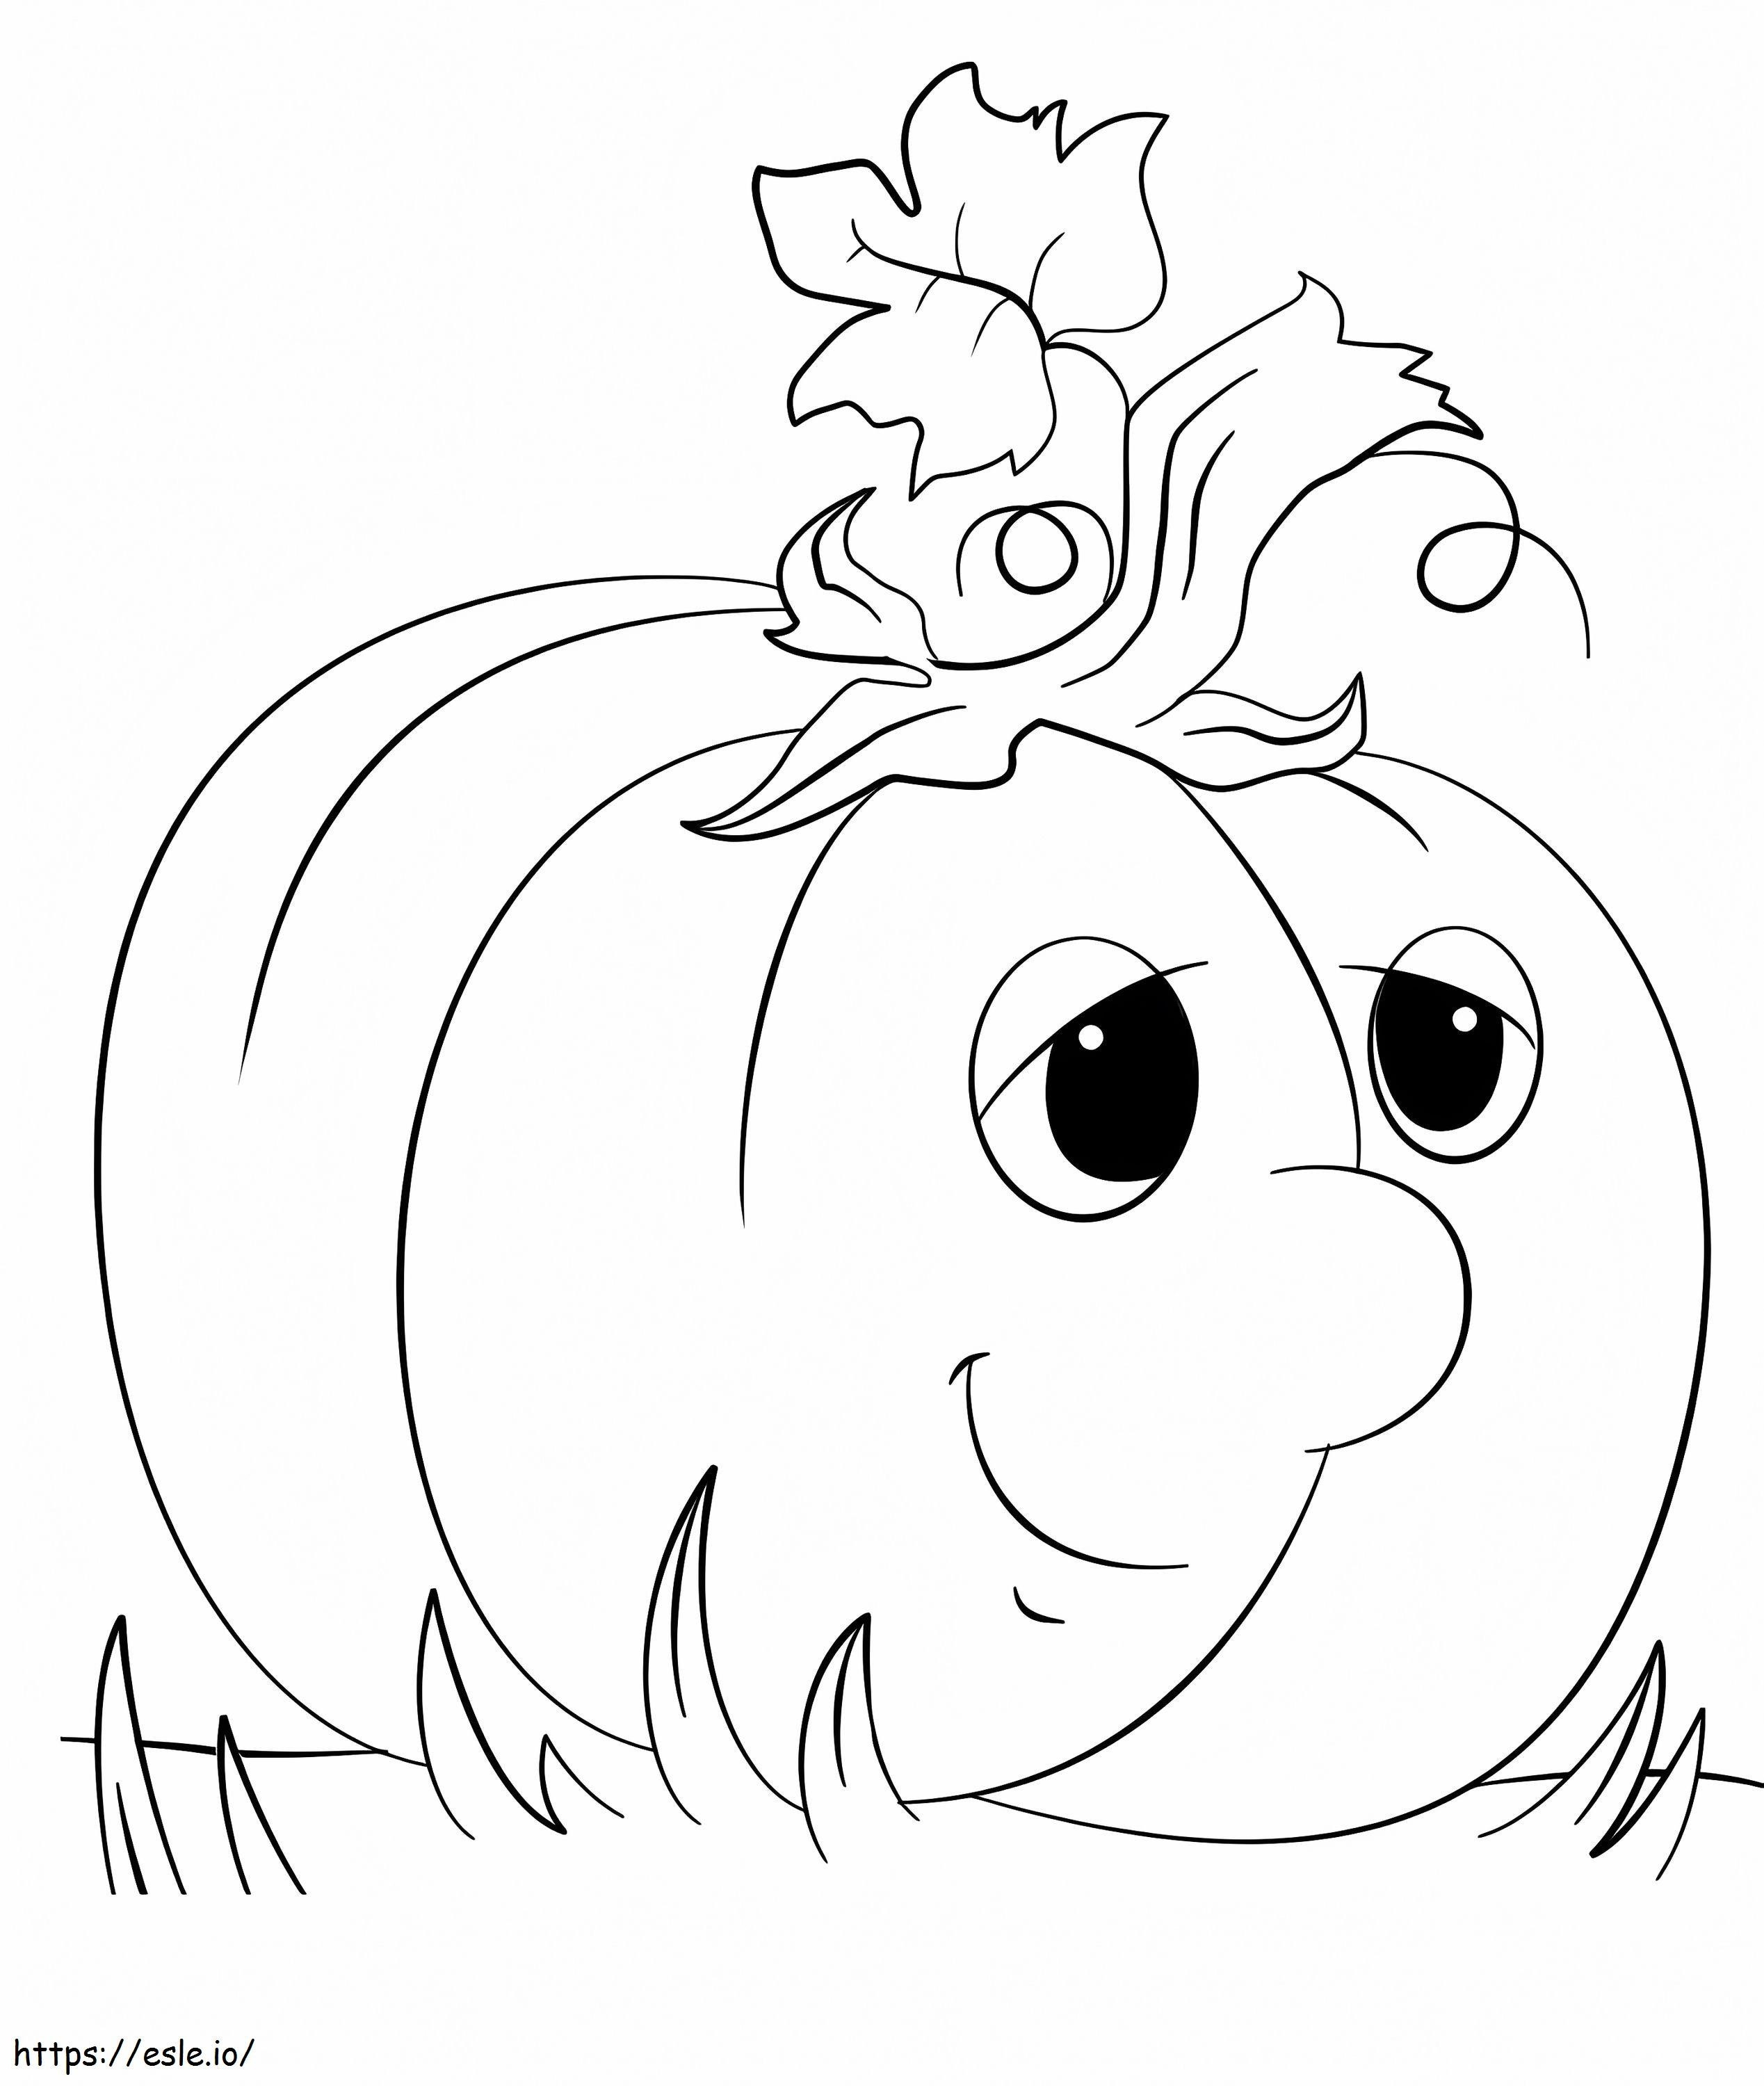 Cartoon Pumpkin A4 coloring page